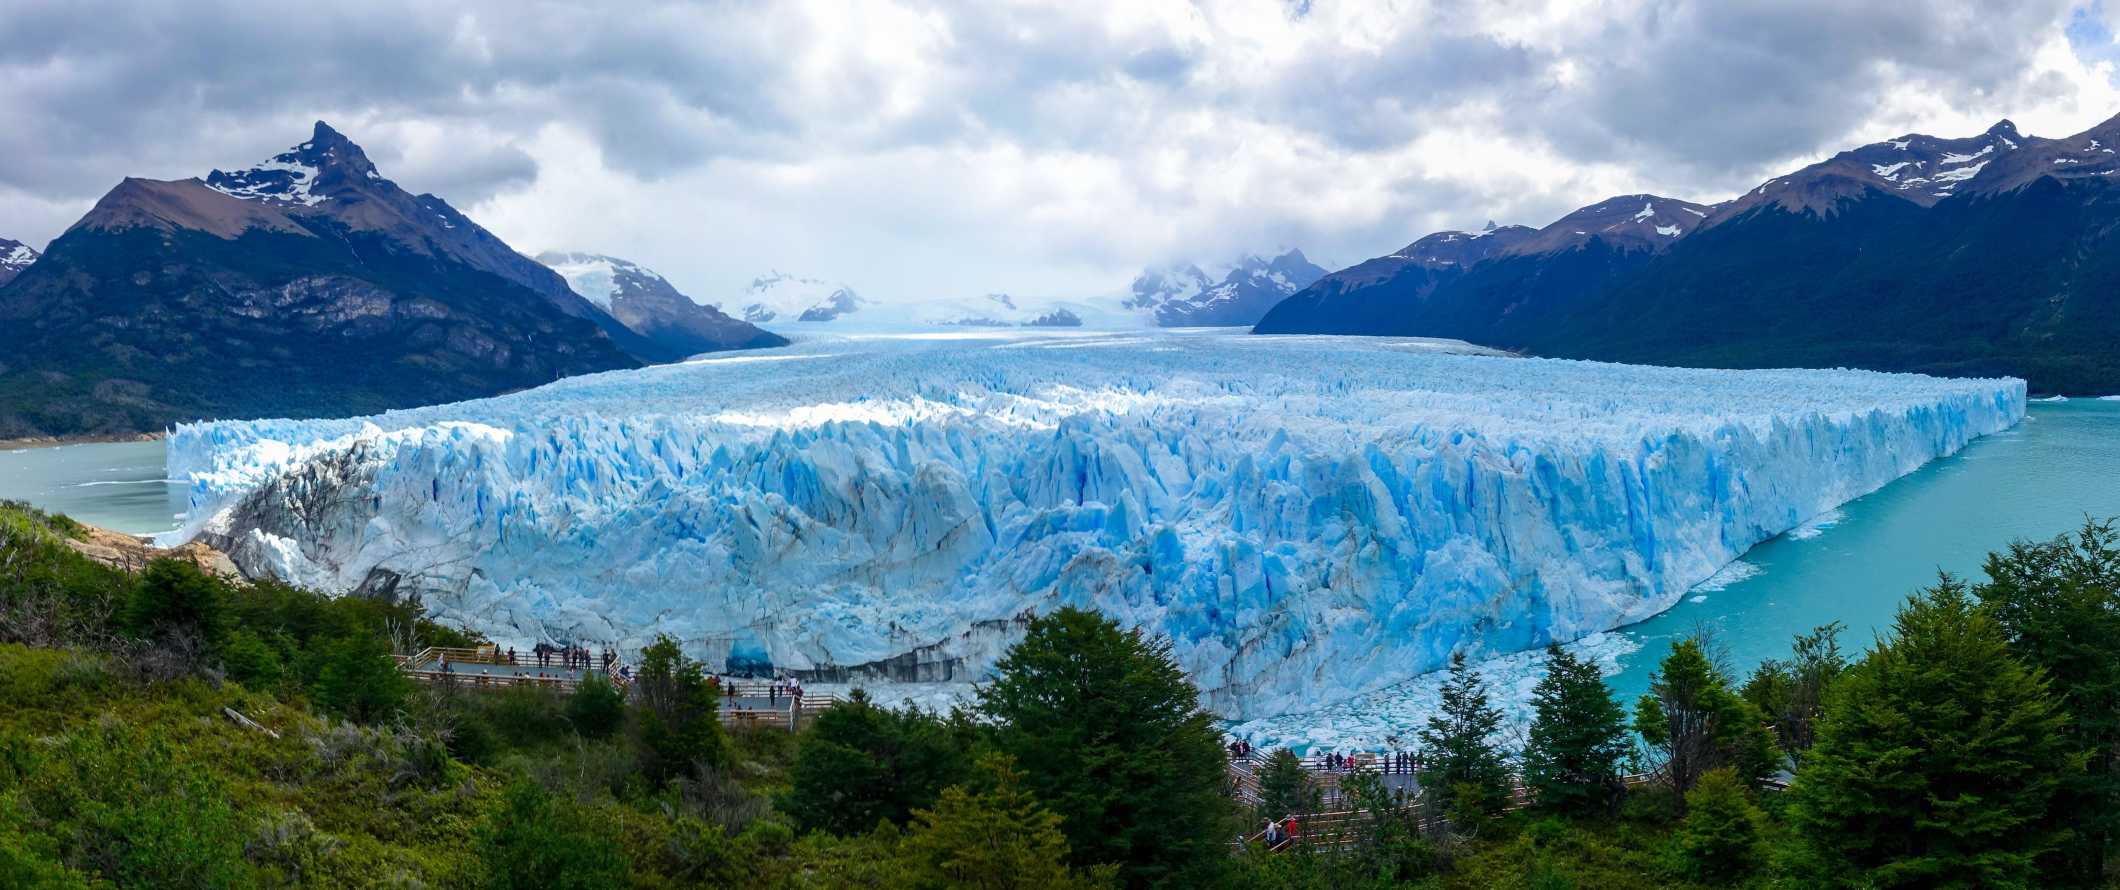 As incríveis e imponentes montanhas da Patagônia, Argentina, sob um céu azul claro, com uma grande geleira em primeiro plano.